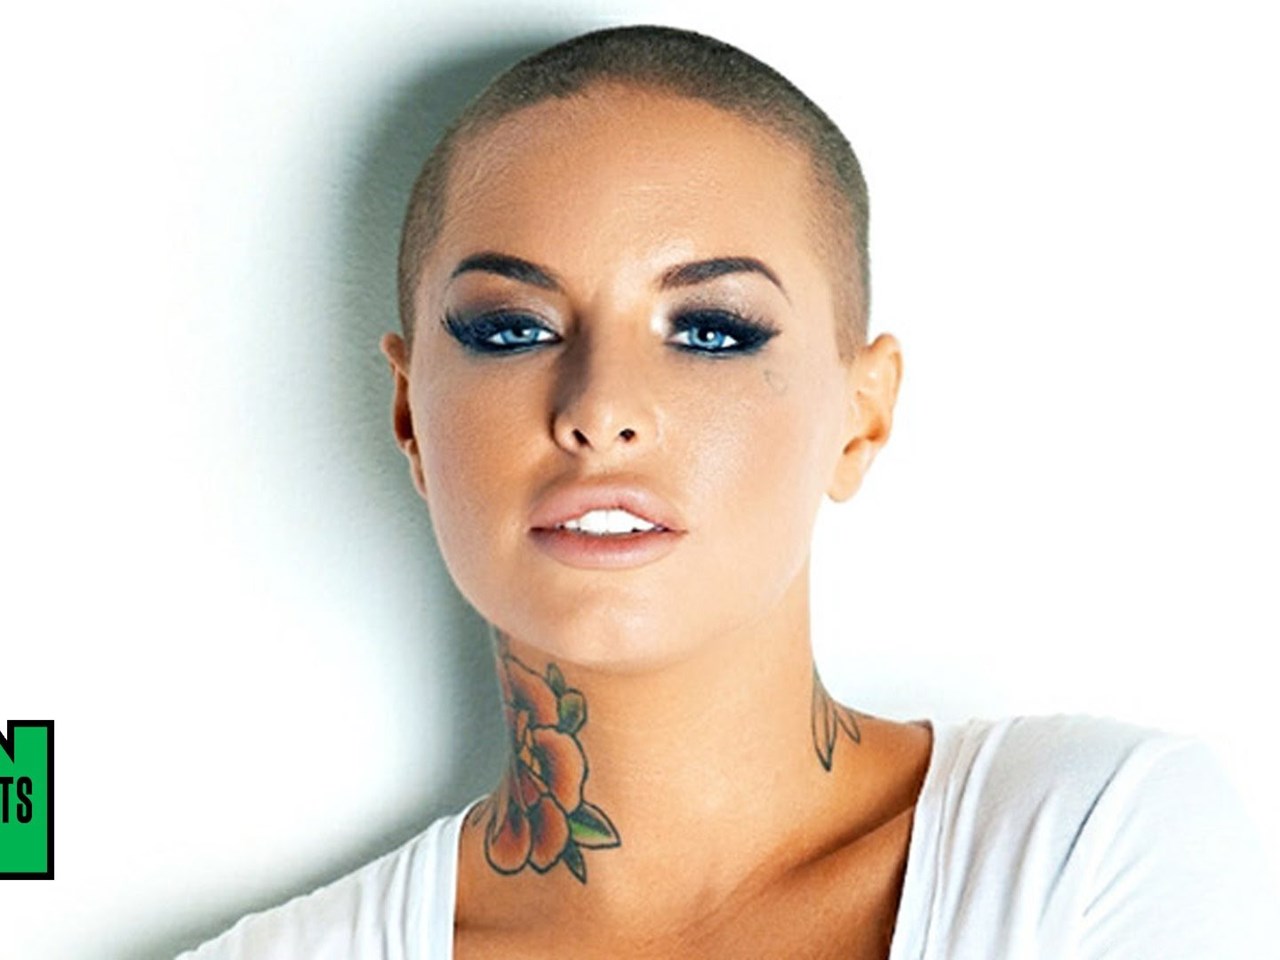 Татуированная красотка Кристи Мак в подборке камшотов на лицо сучки